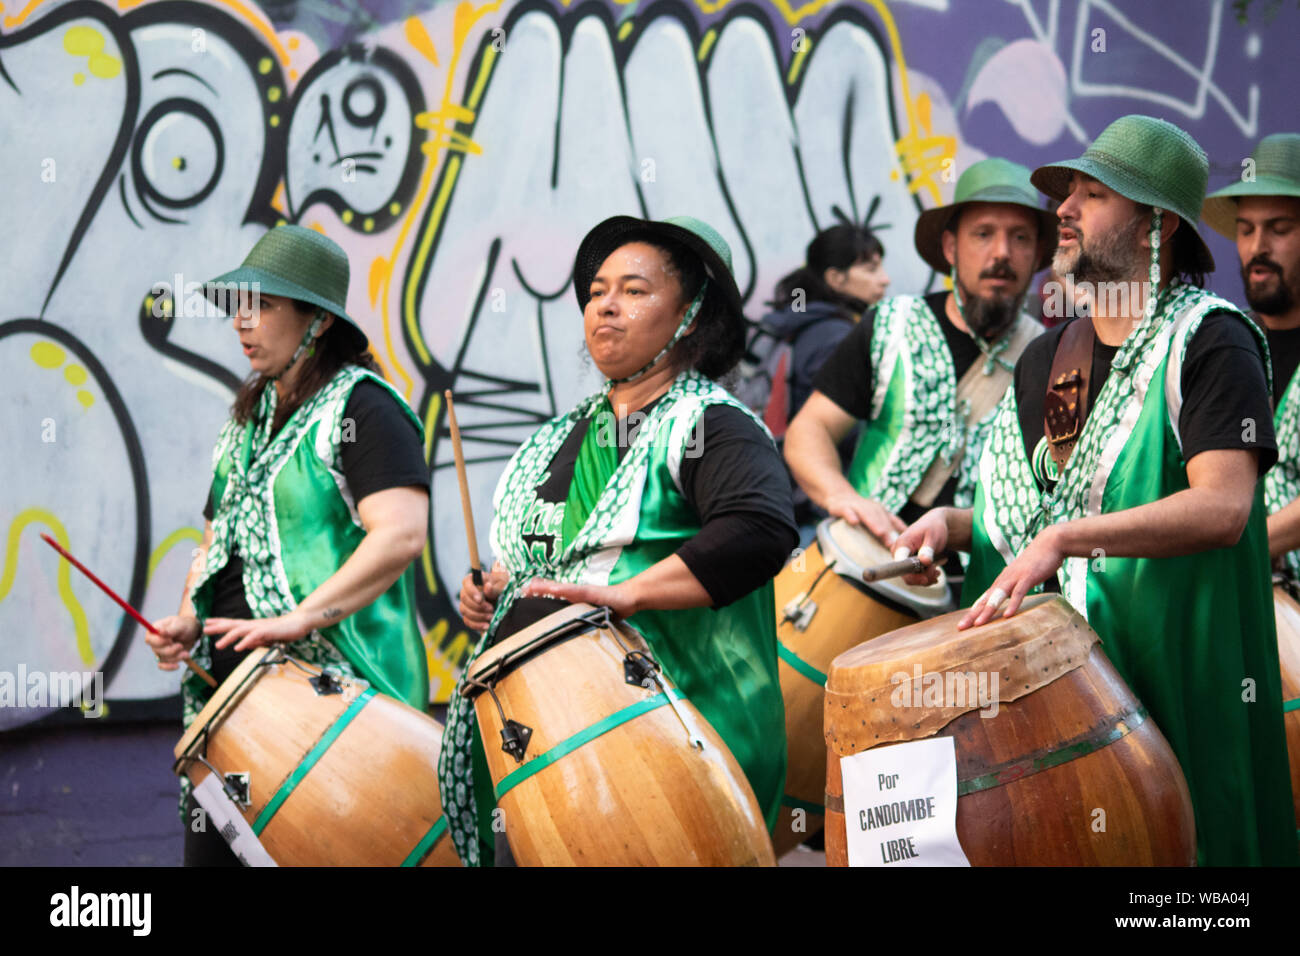 Grupo de personas tocando candombe en el Rio de la Plata Stock Photo